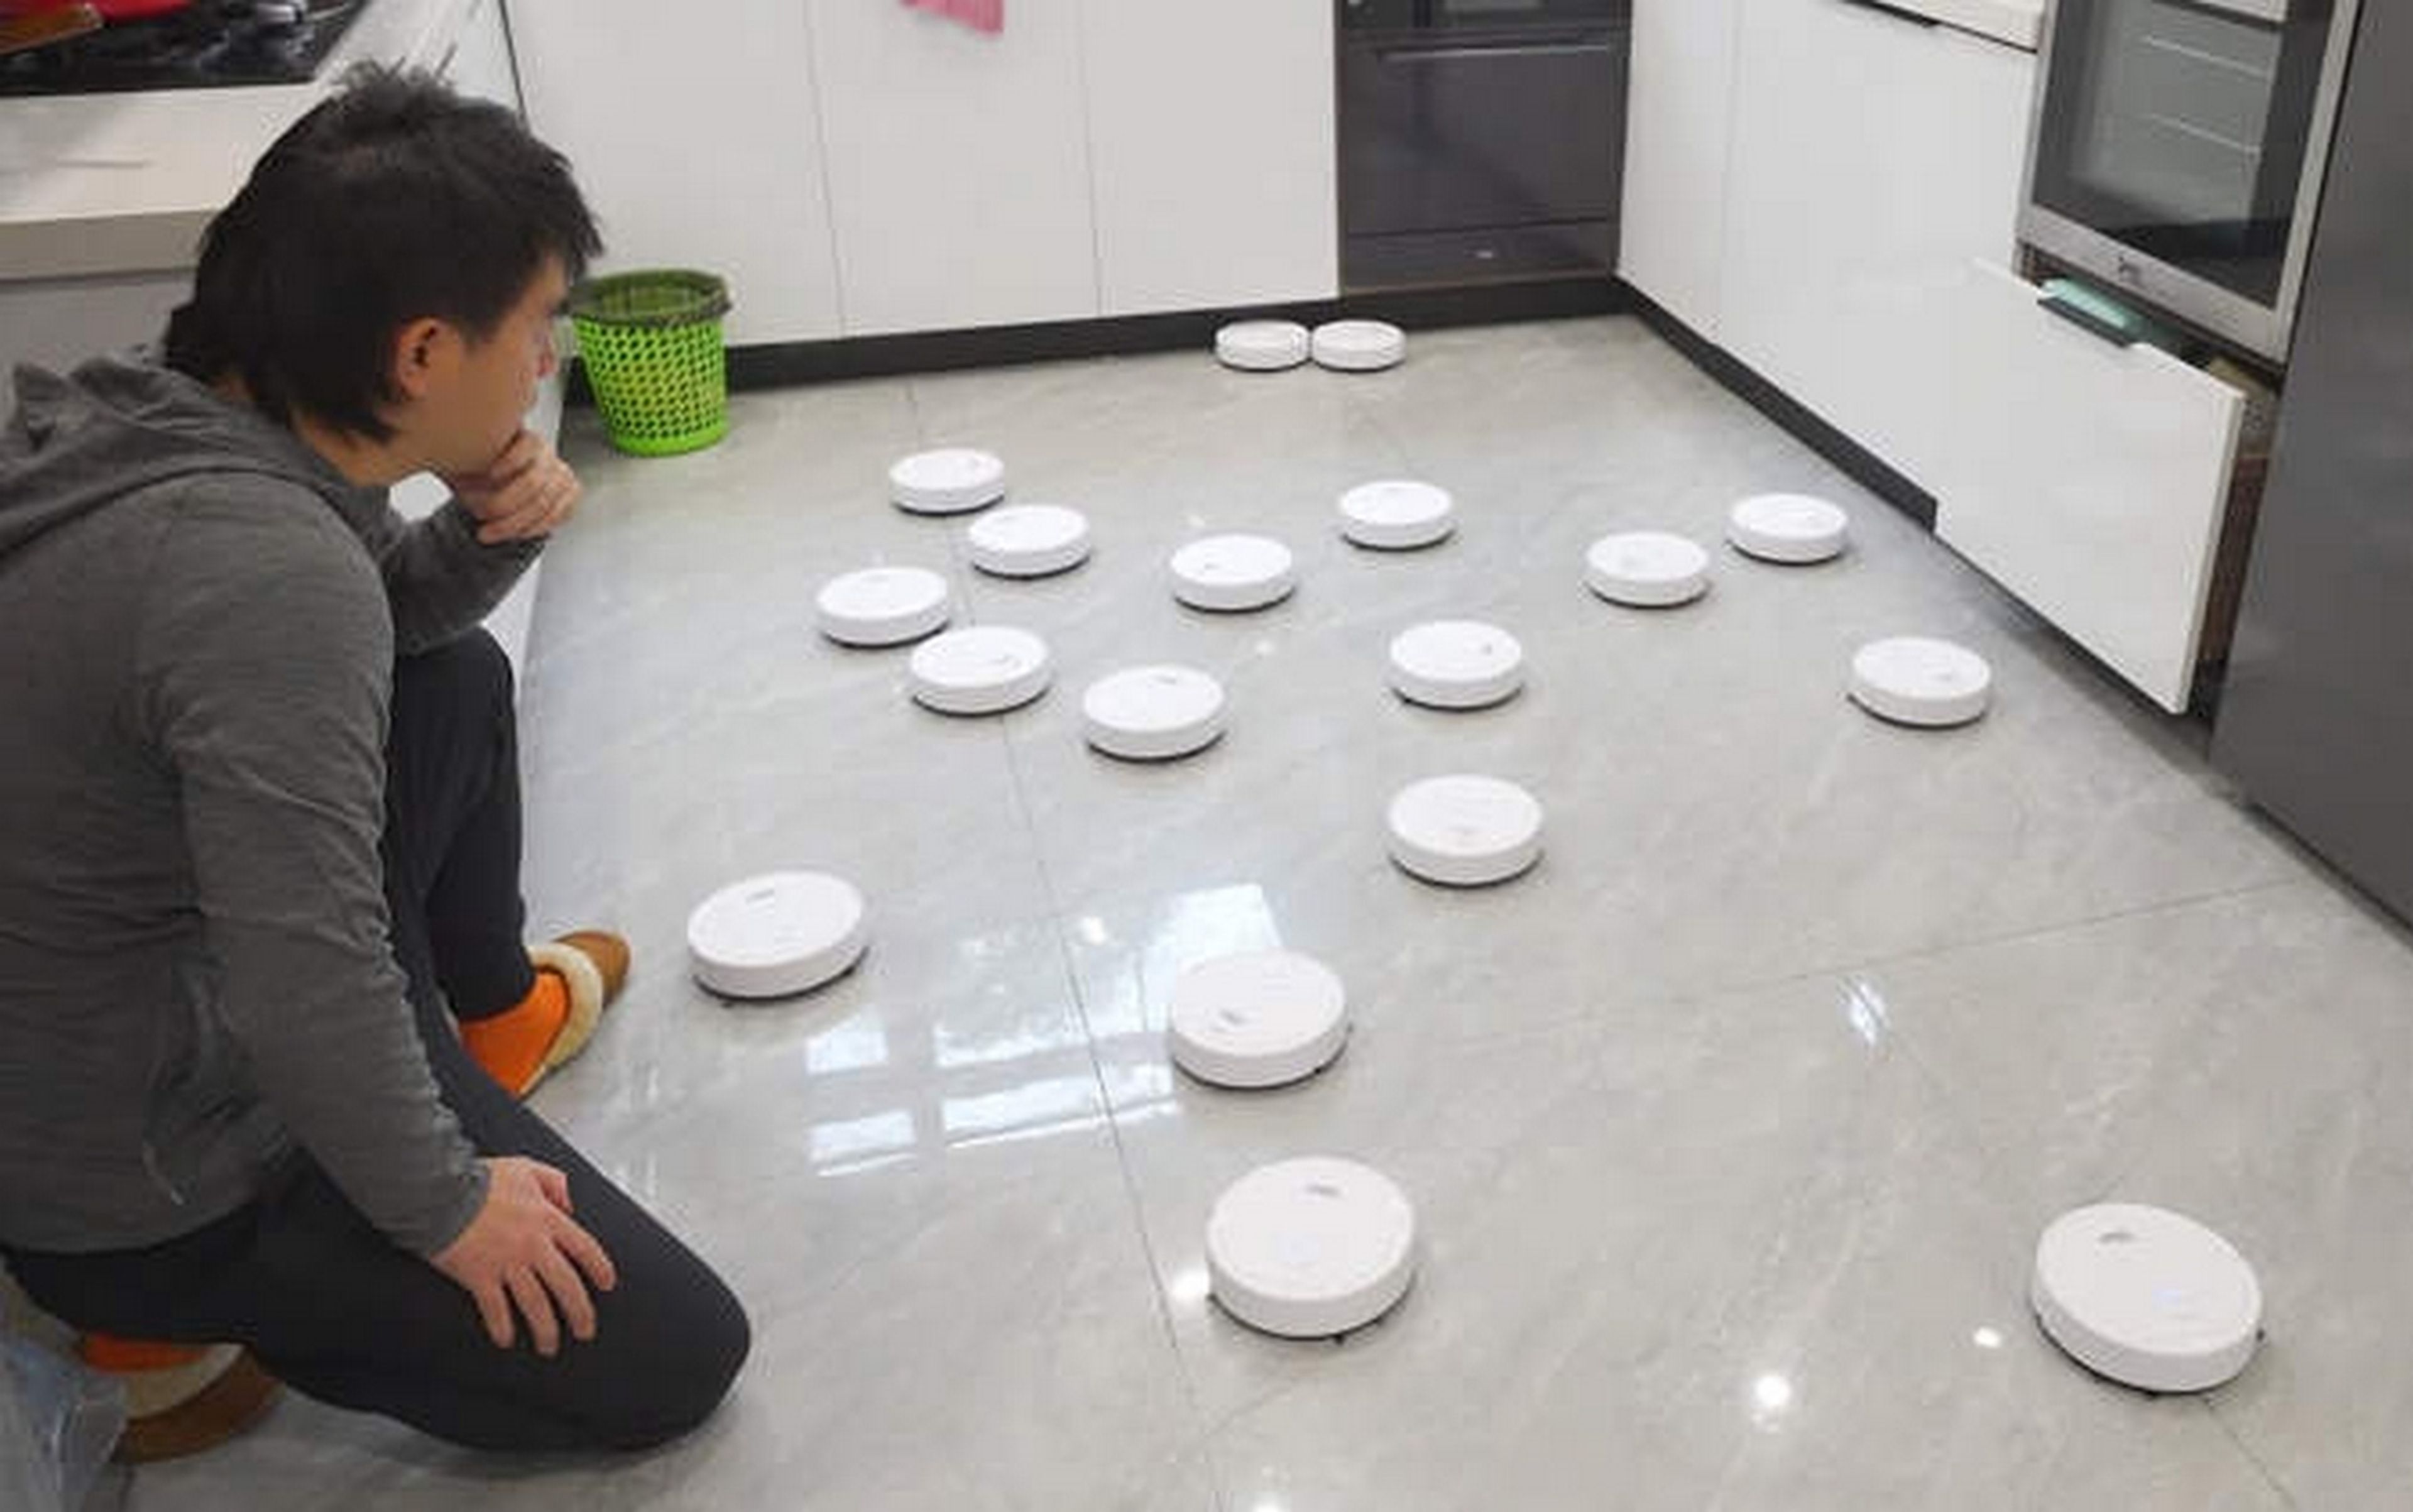 Compra en una tienda china 20 robots de limpieza por 75 euros, y enseguida descubre por qué son tan baratos